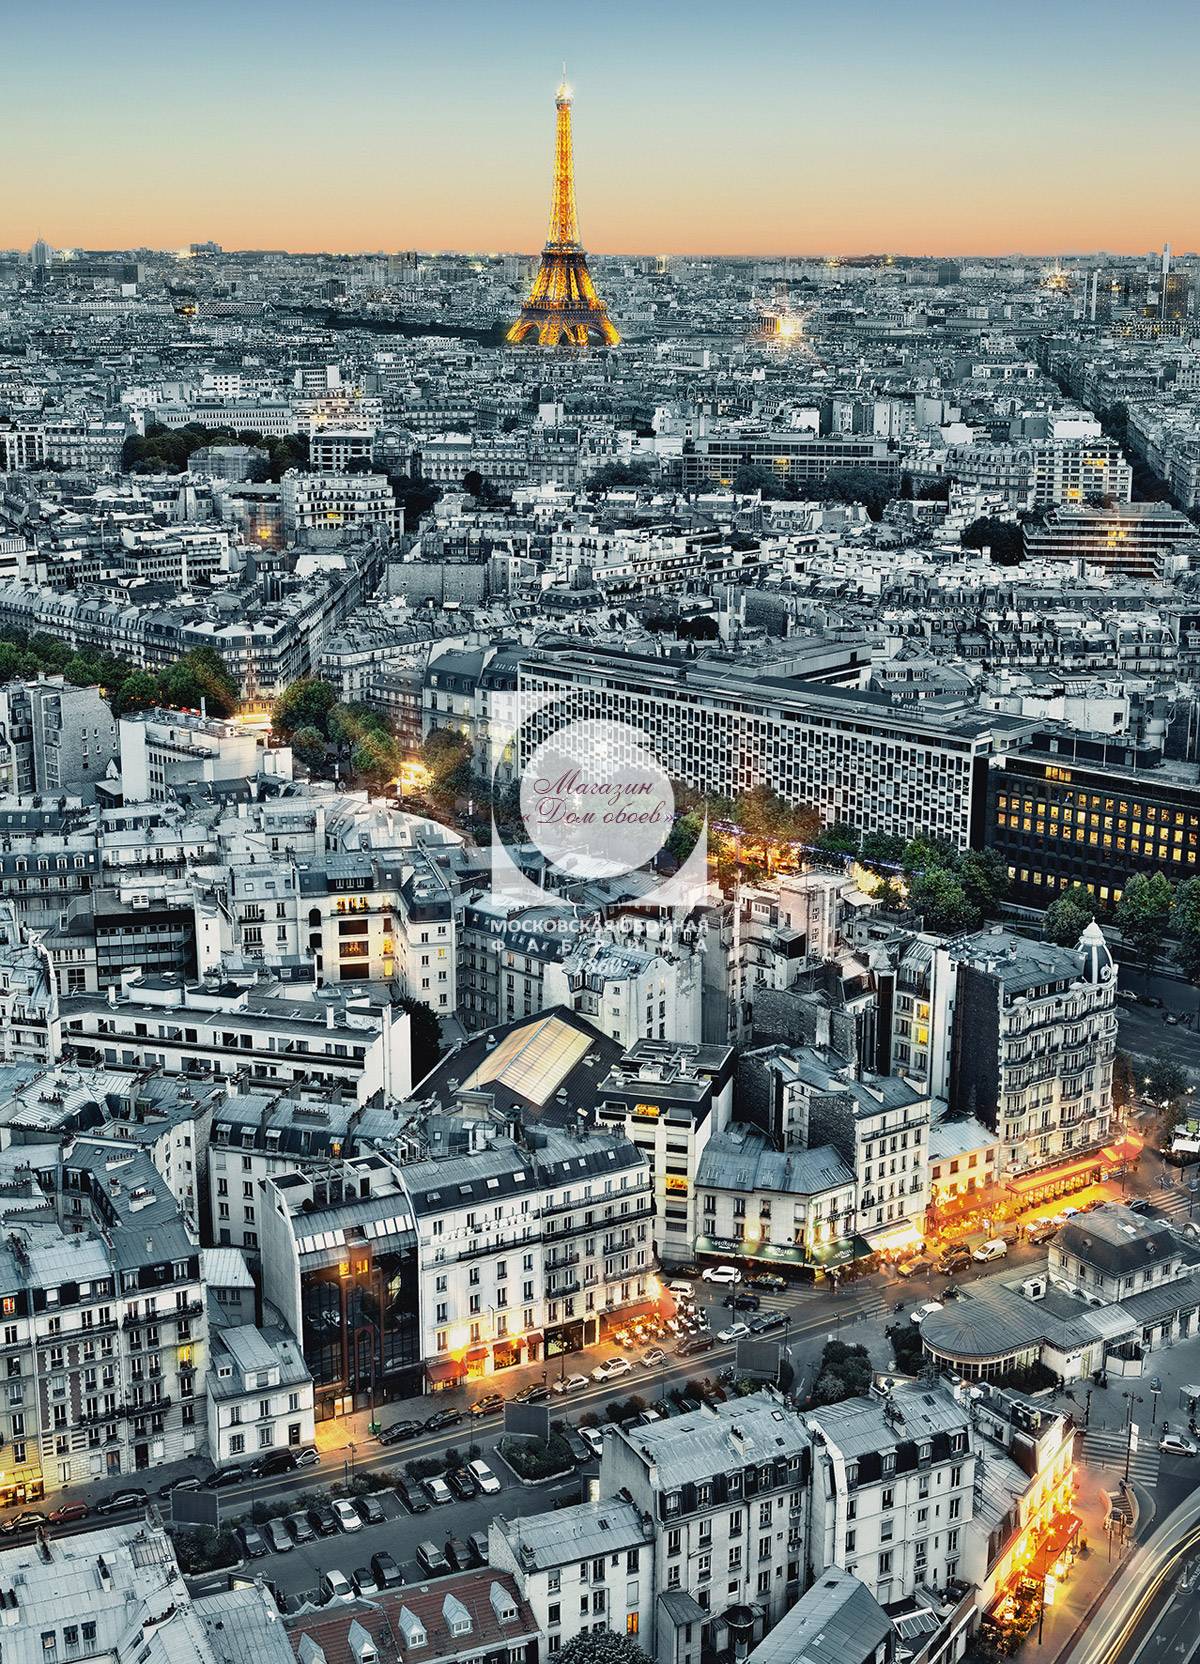 Paris Aerial View 00434